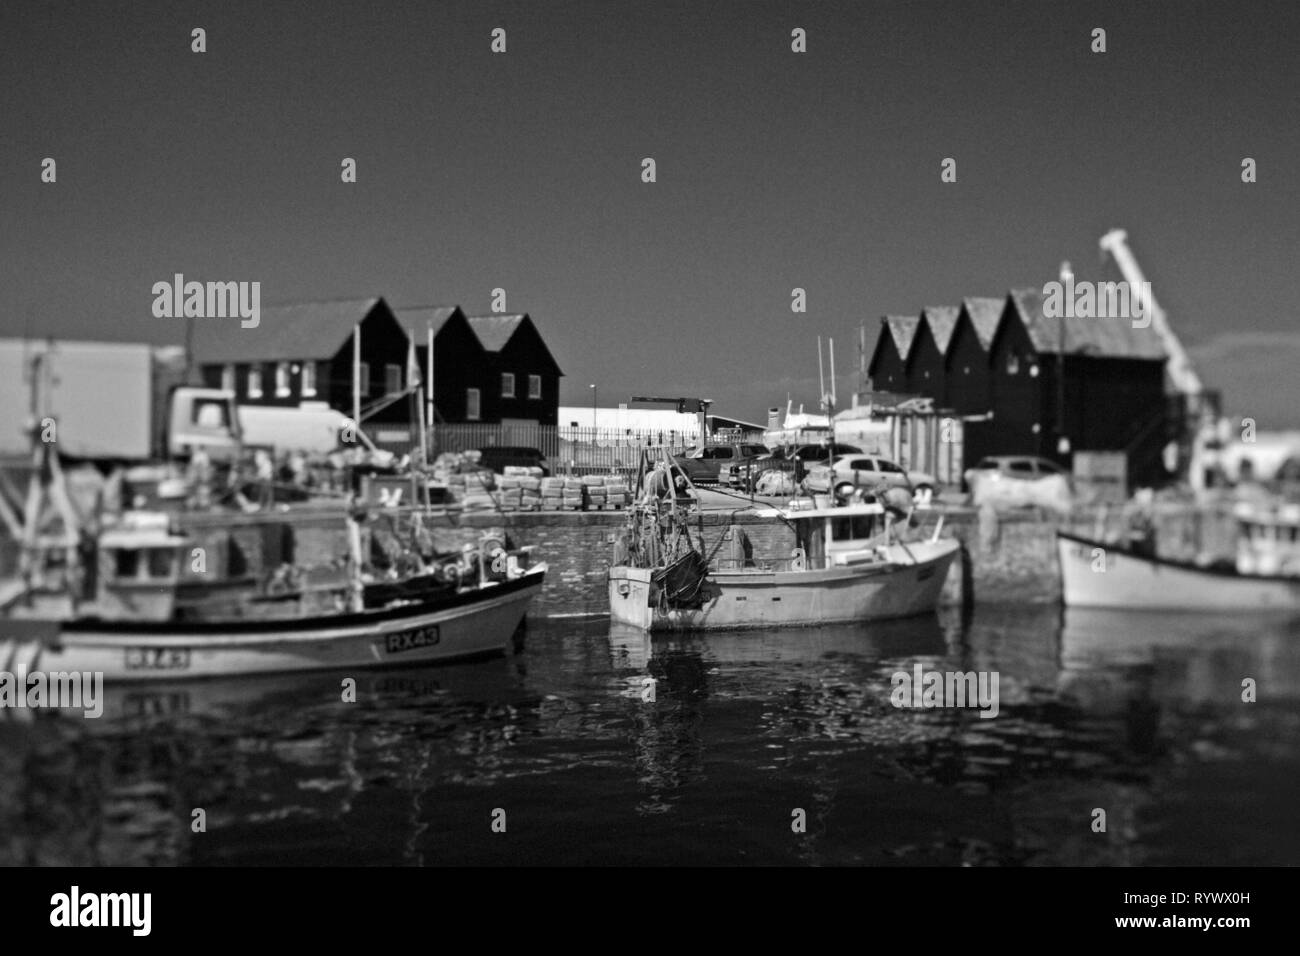 Bateaux de pêche et de cabanes de pêcheurs au port de Whitstable, Kent, Angleterre. Image prise avec un objectif de contrôle de la perspective et converti en monochrome. Banque D'Images